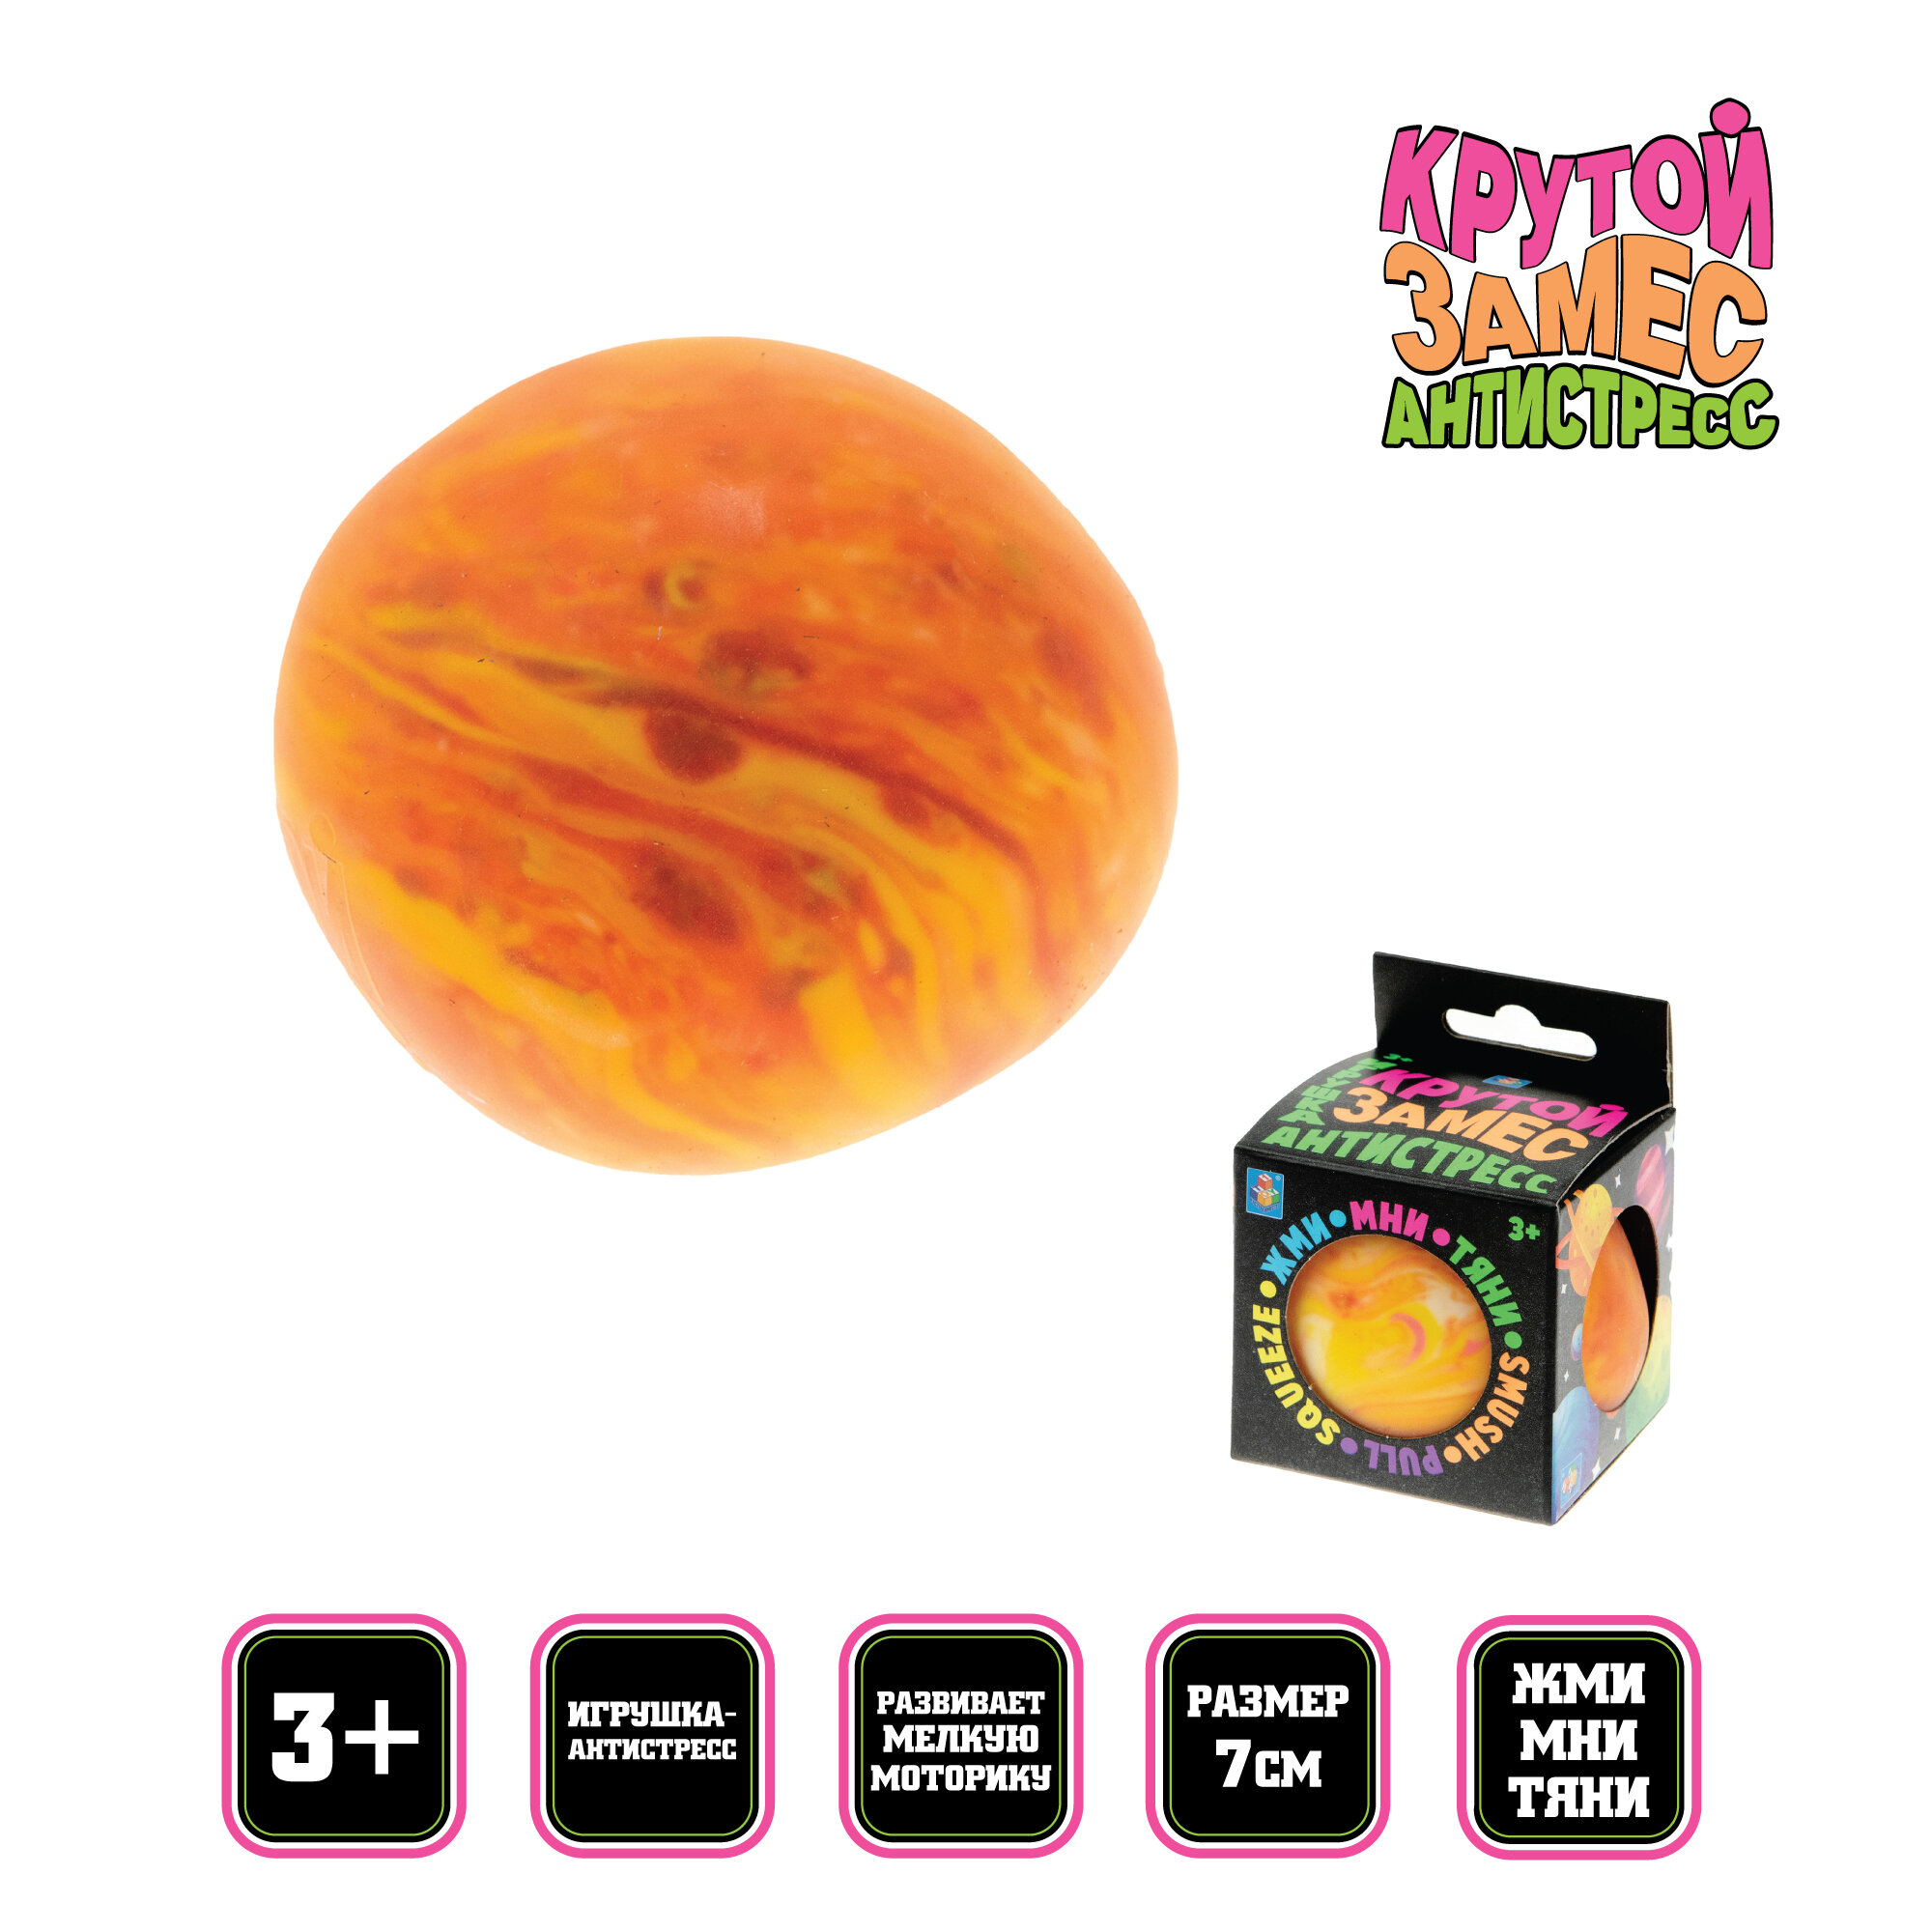 Игрушка-антистресс 1toy Крутой замес, шар галактика 7см оранжевый